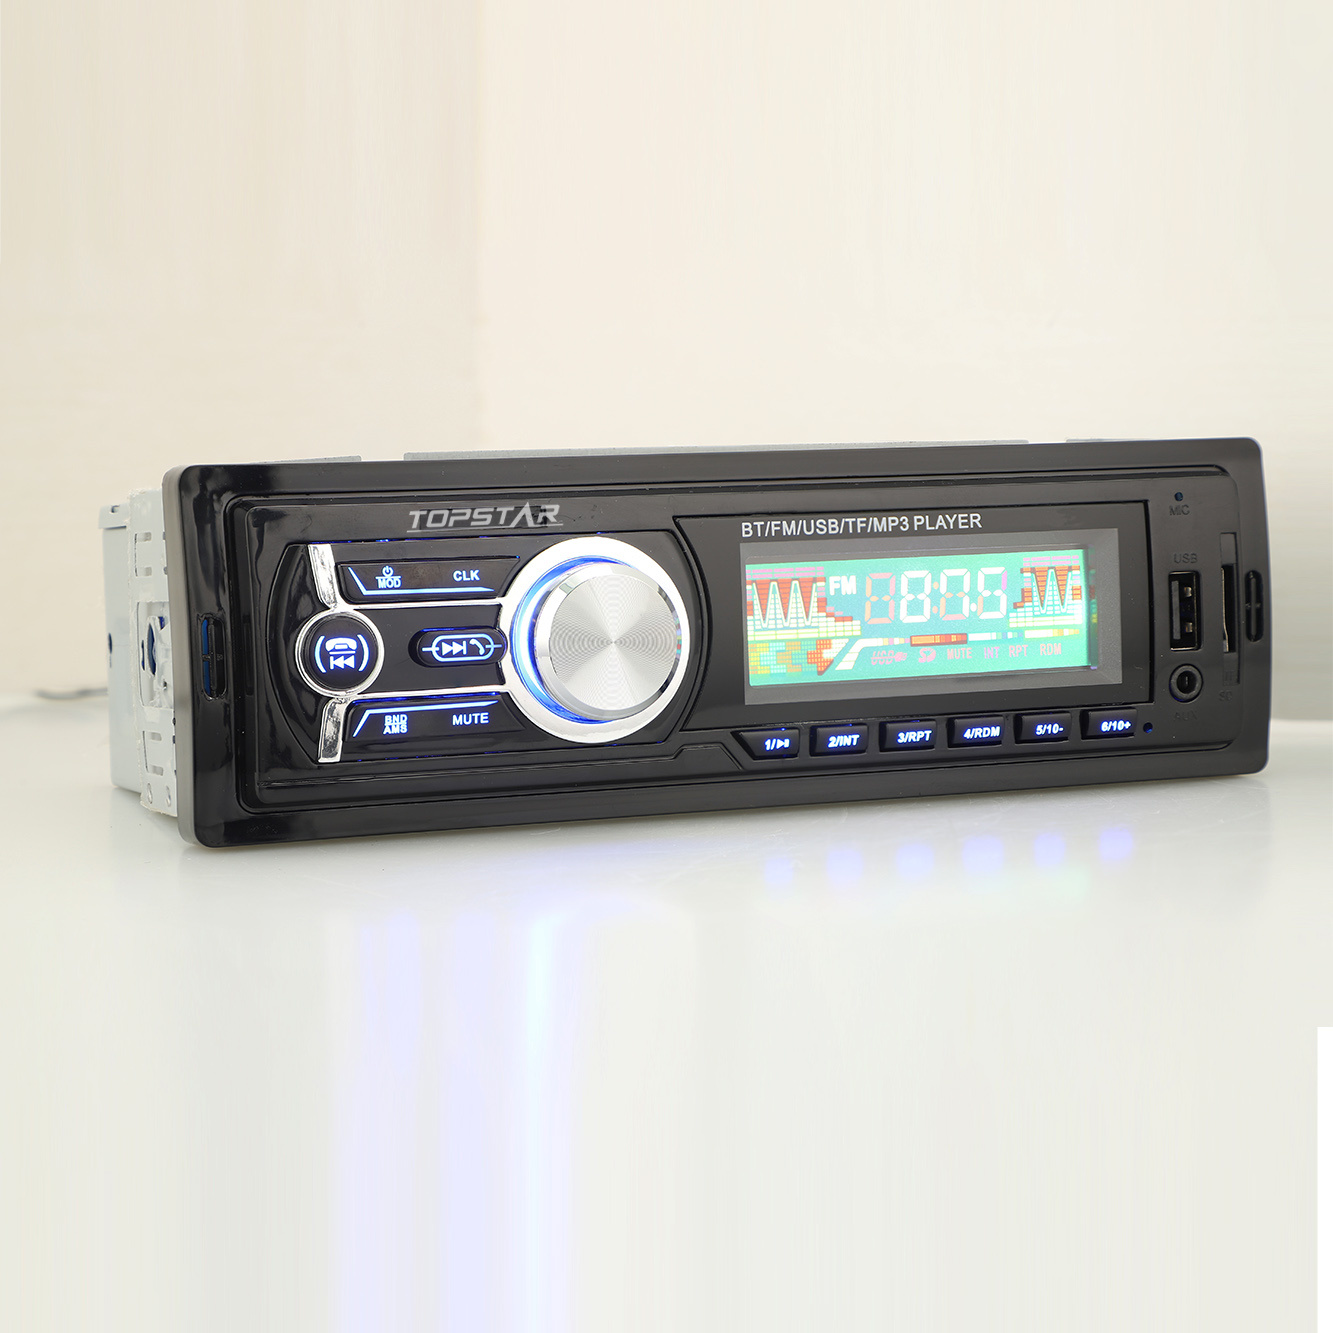 السيارات الصوت راديو السيارة مجموعات الصوت سيارة ستيريو FM الارسال الصوت السيارات الصوت واحد الدين سيارة مشغل MP3